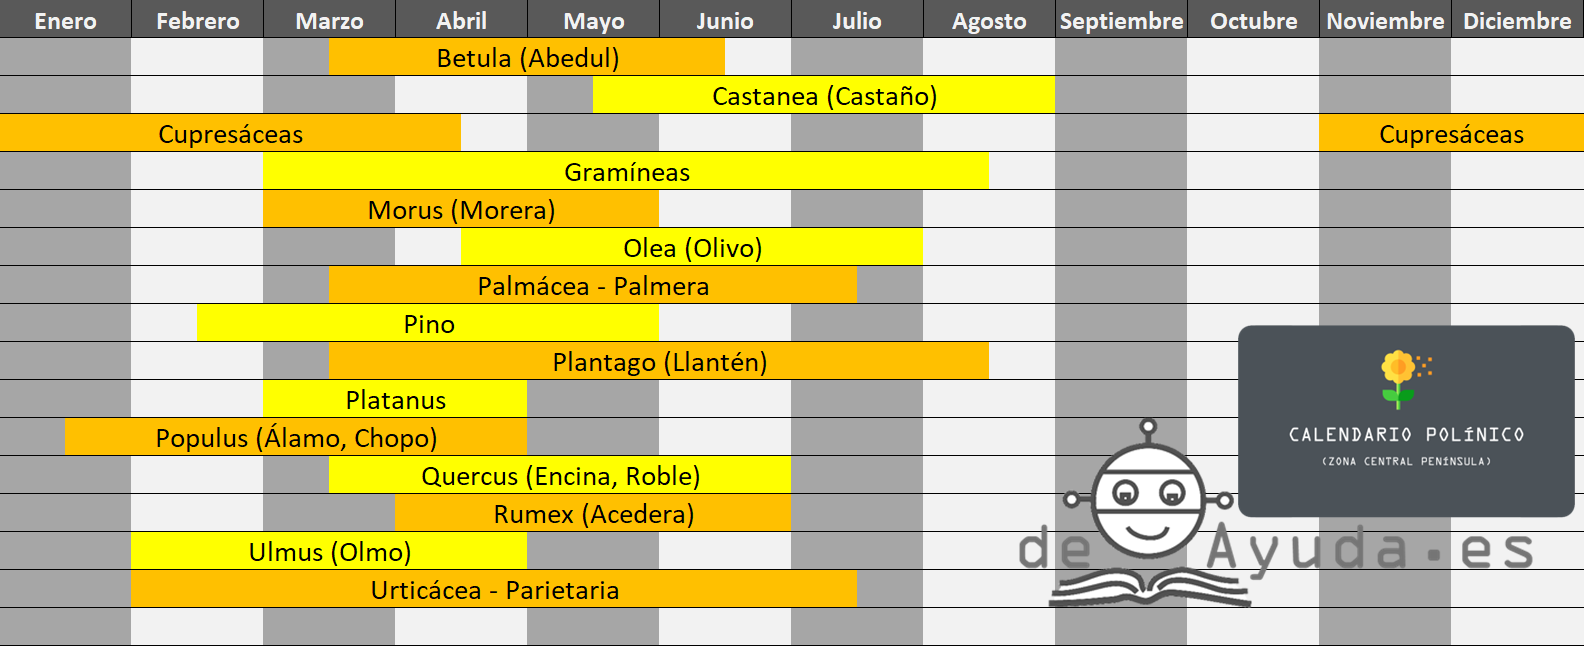 Calendario polínico tabla de especies de plantas y en qué meses del año suelen dar alergia.